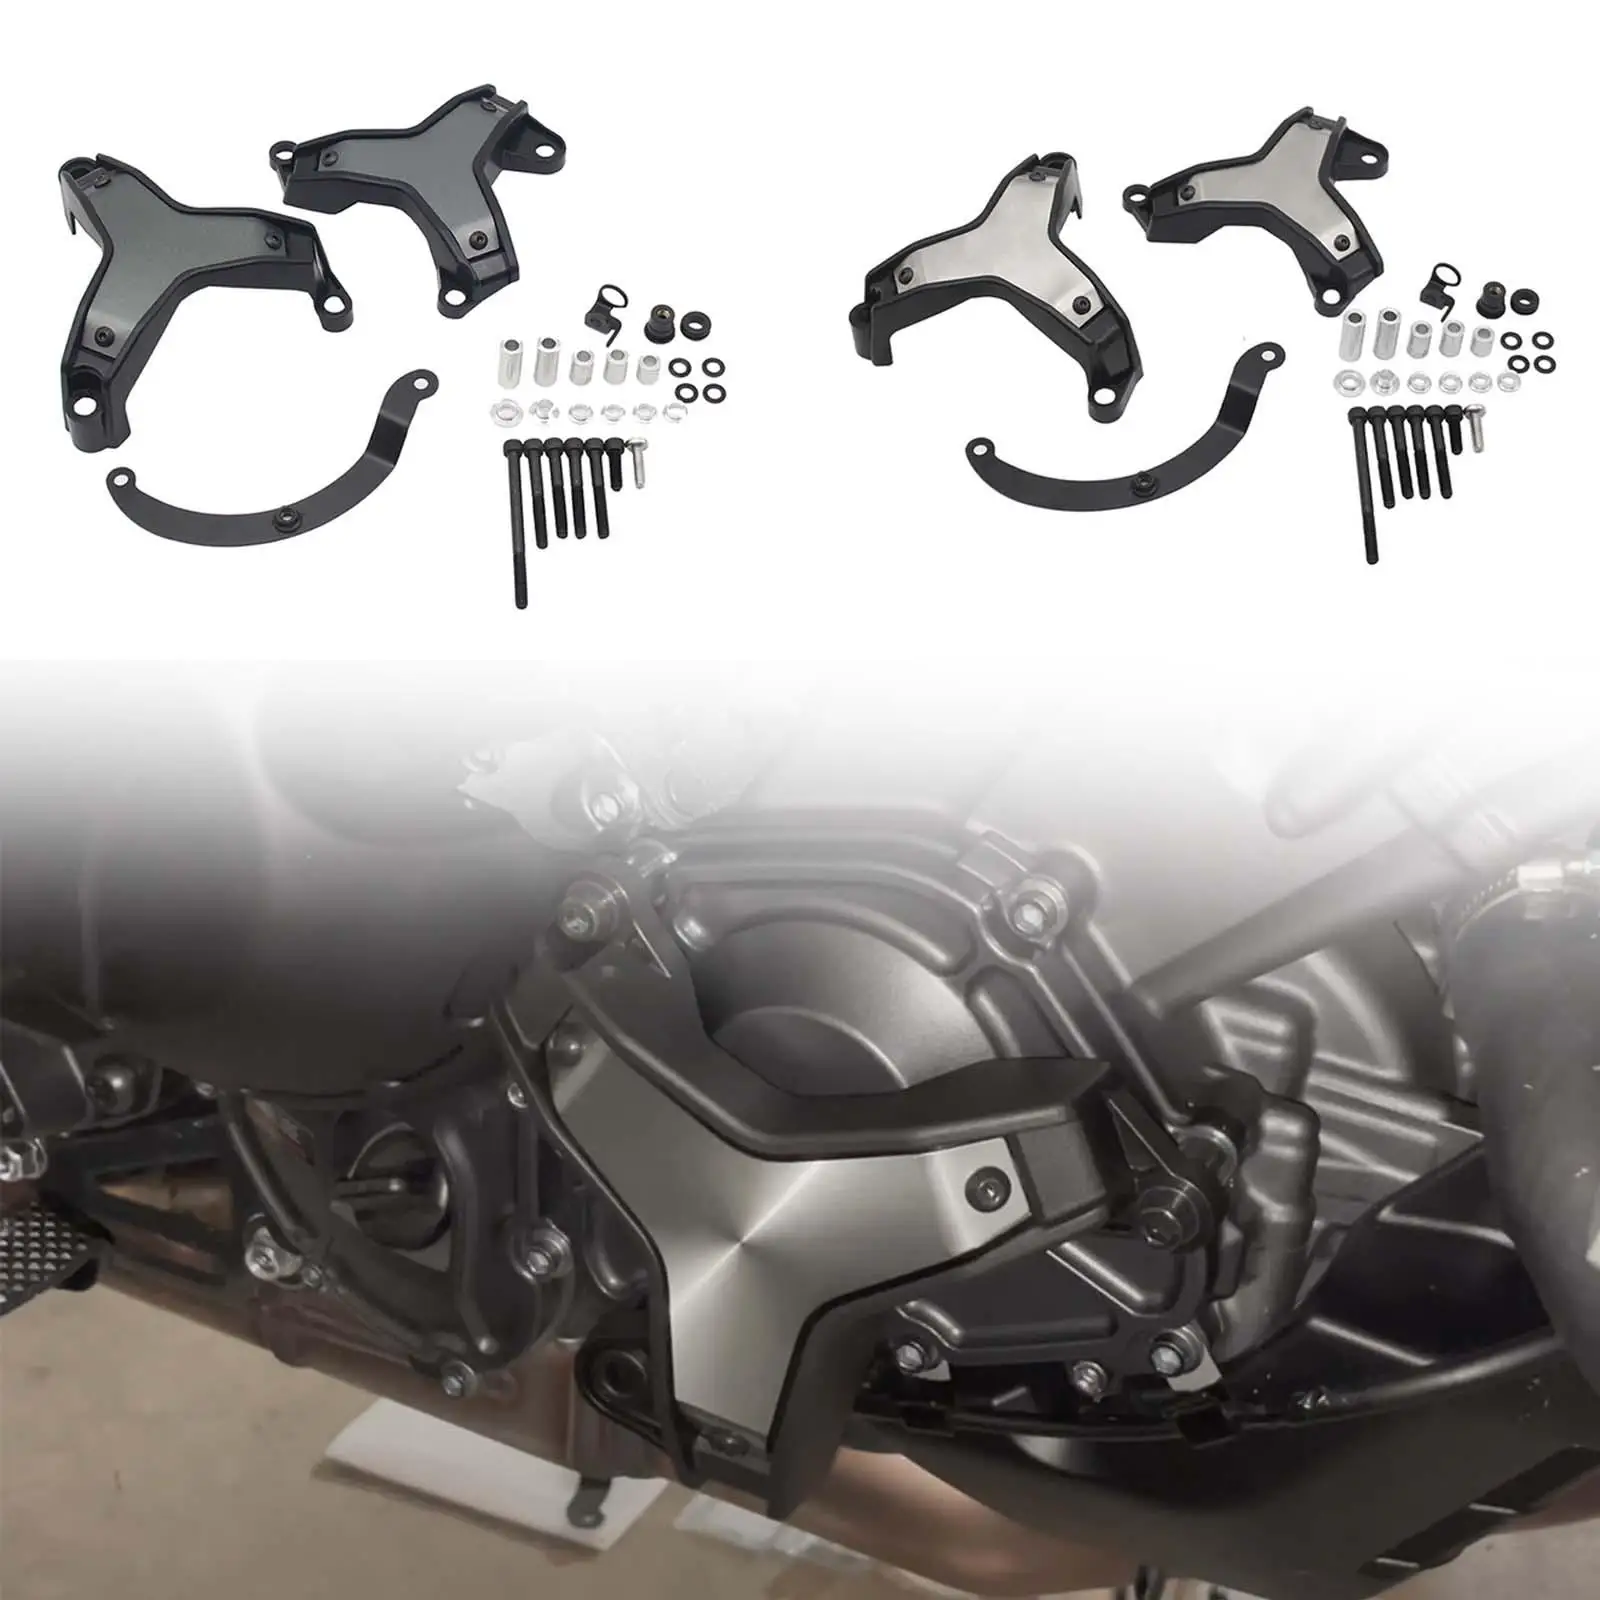 

Motorcycle Engine Protectors Frames Parts Frame Slider for MT-09